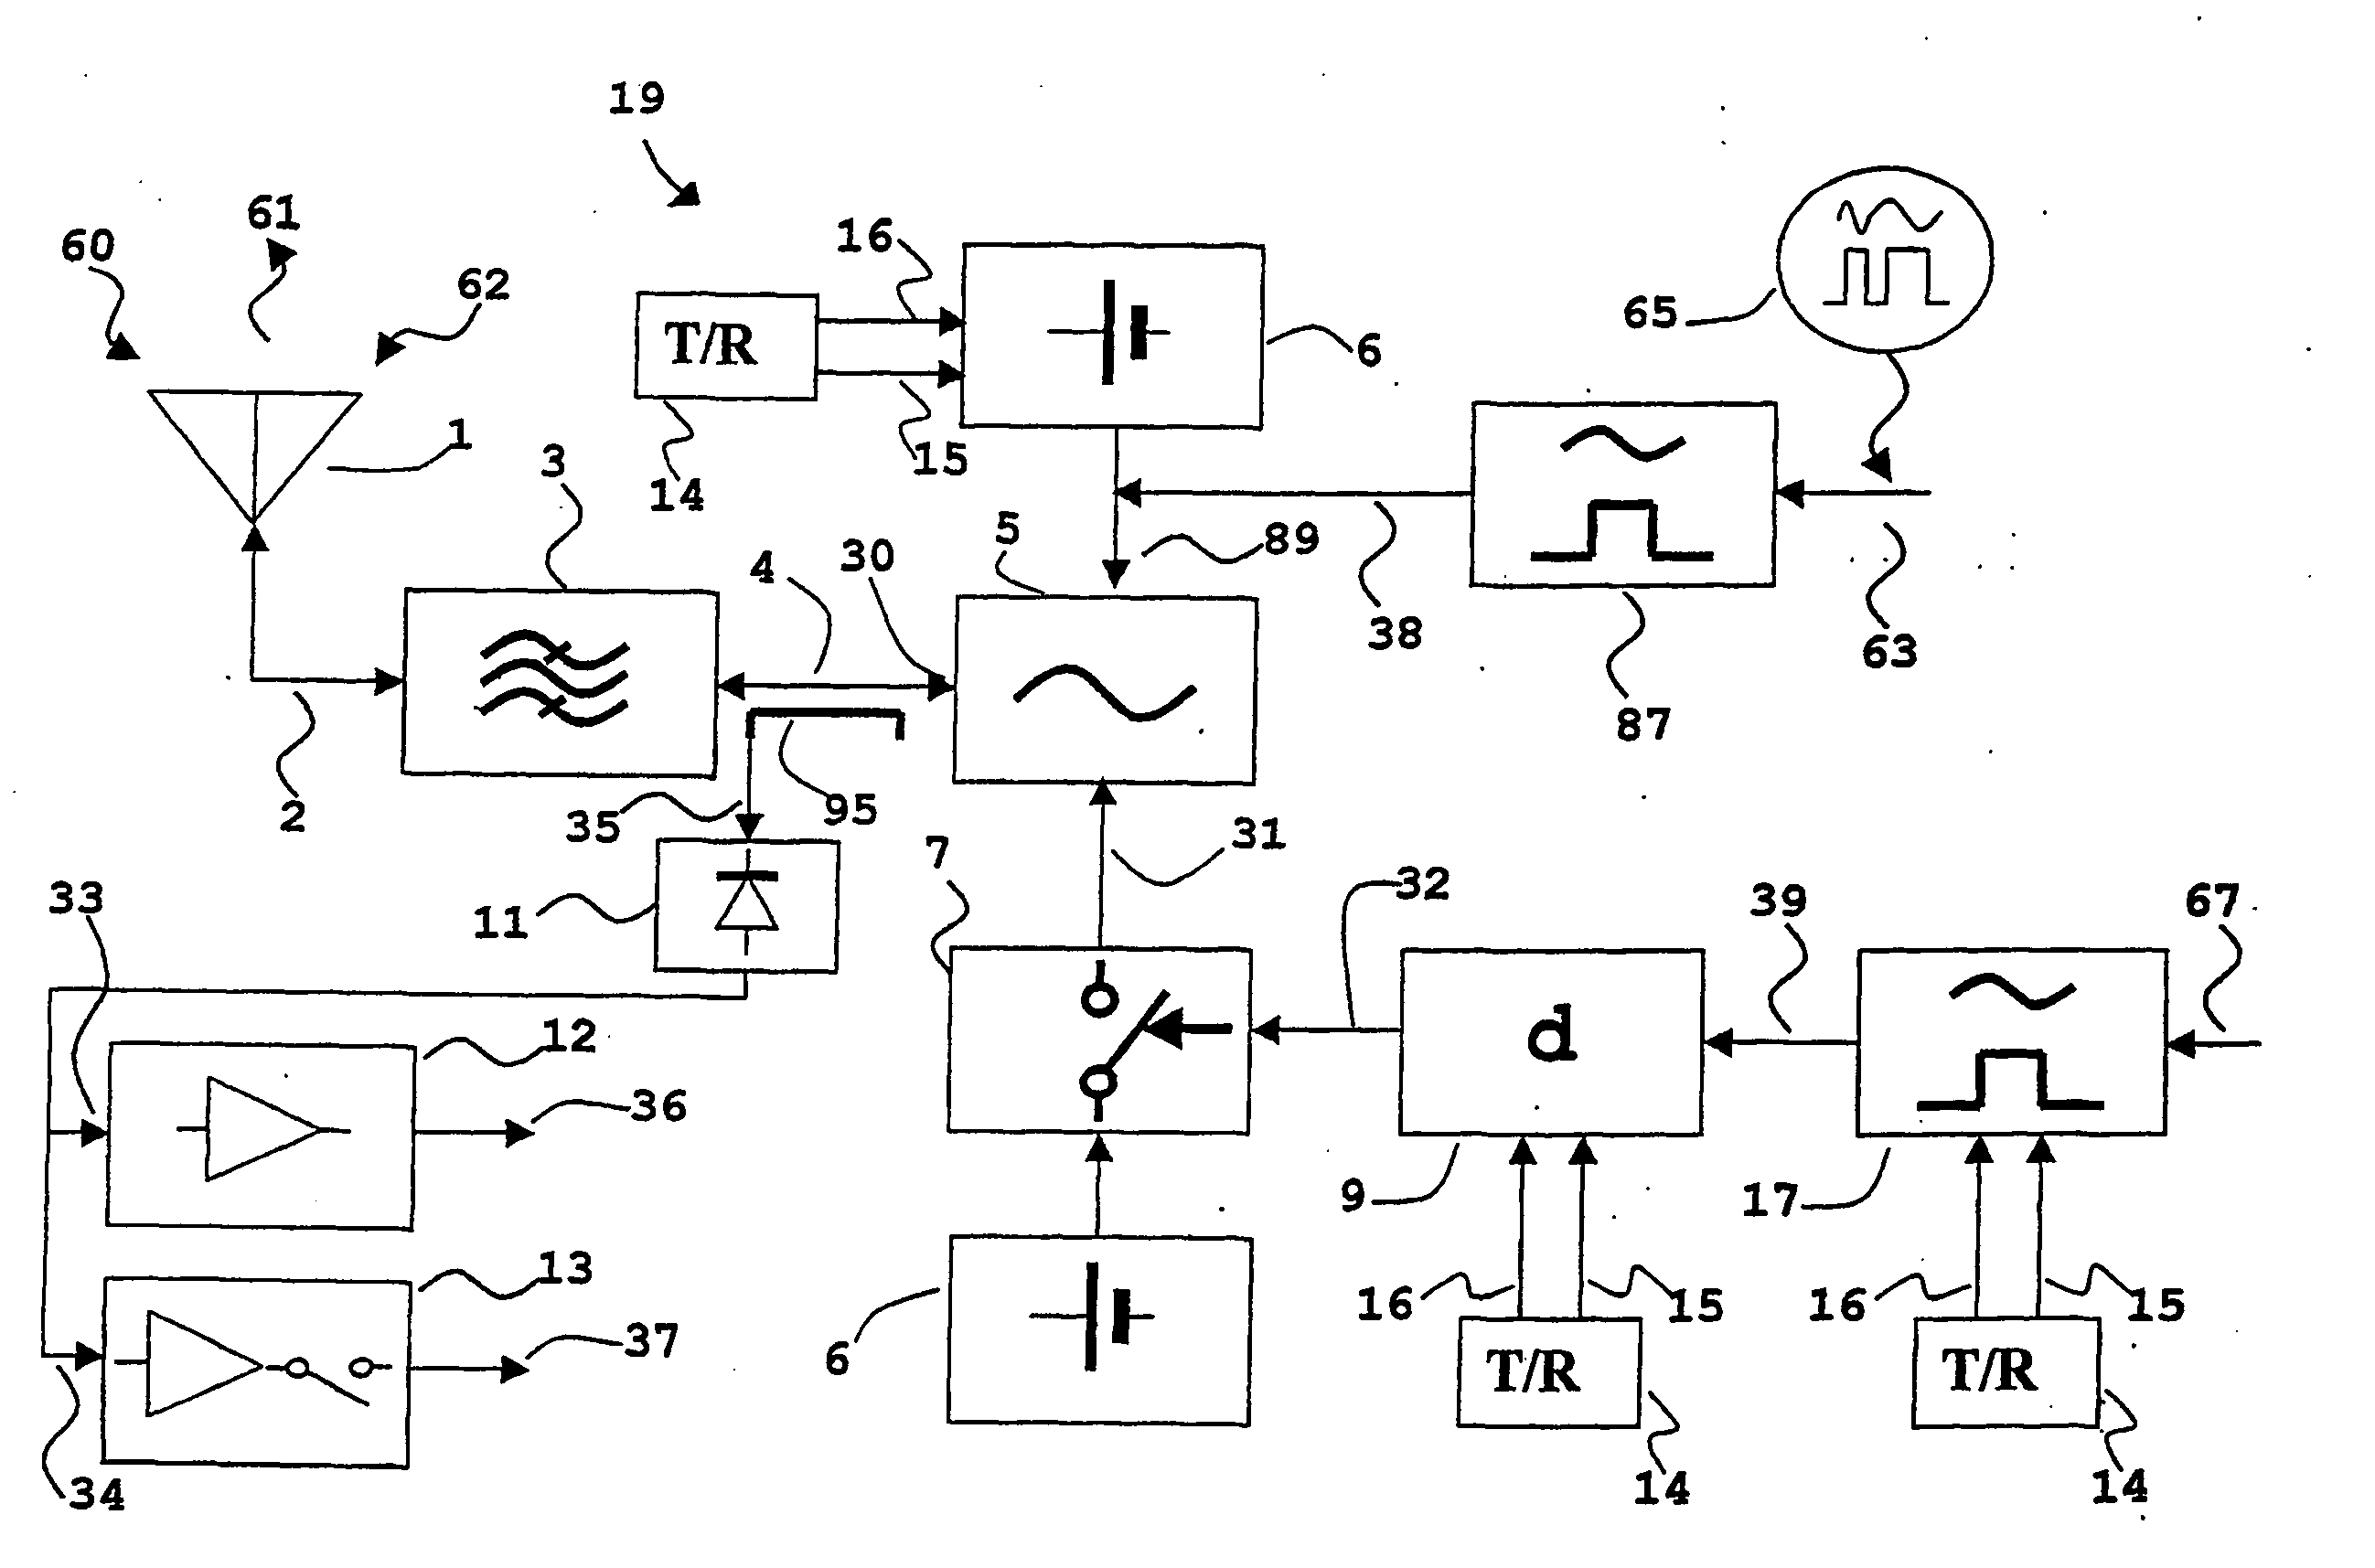 Transponder, including transponder system